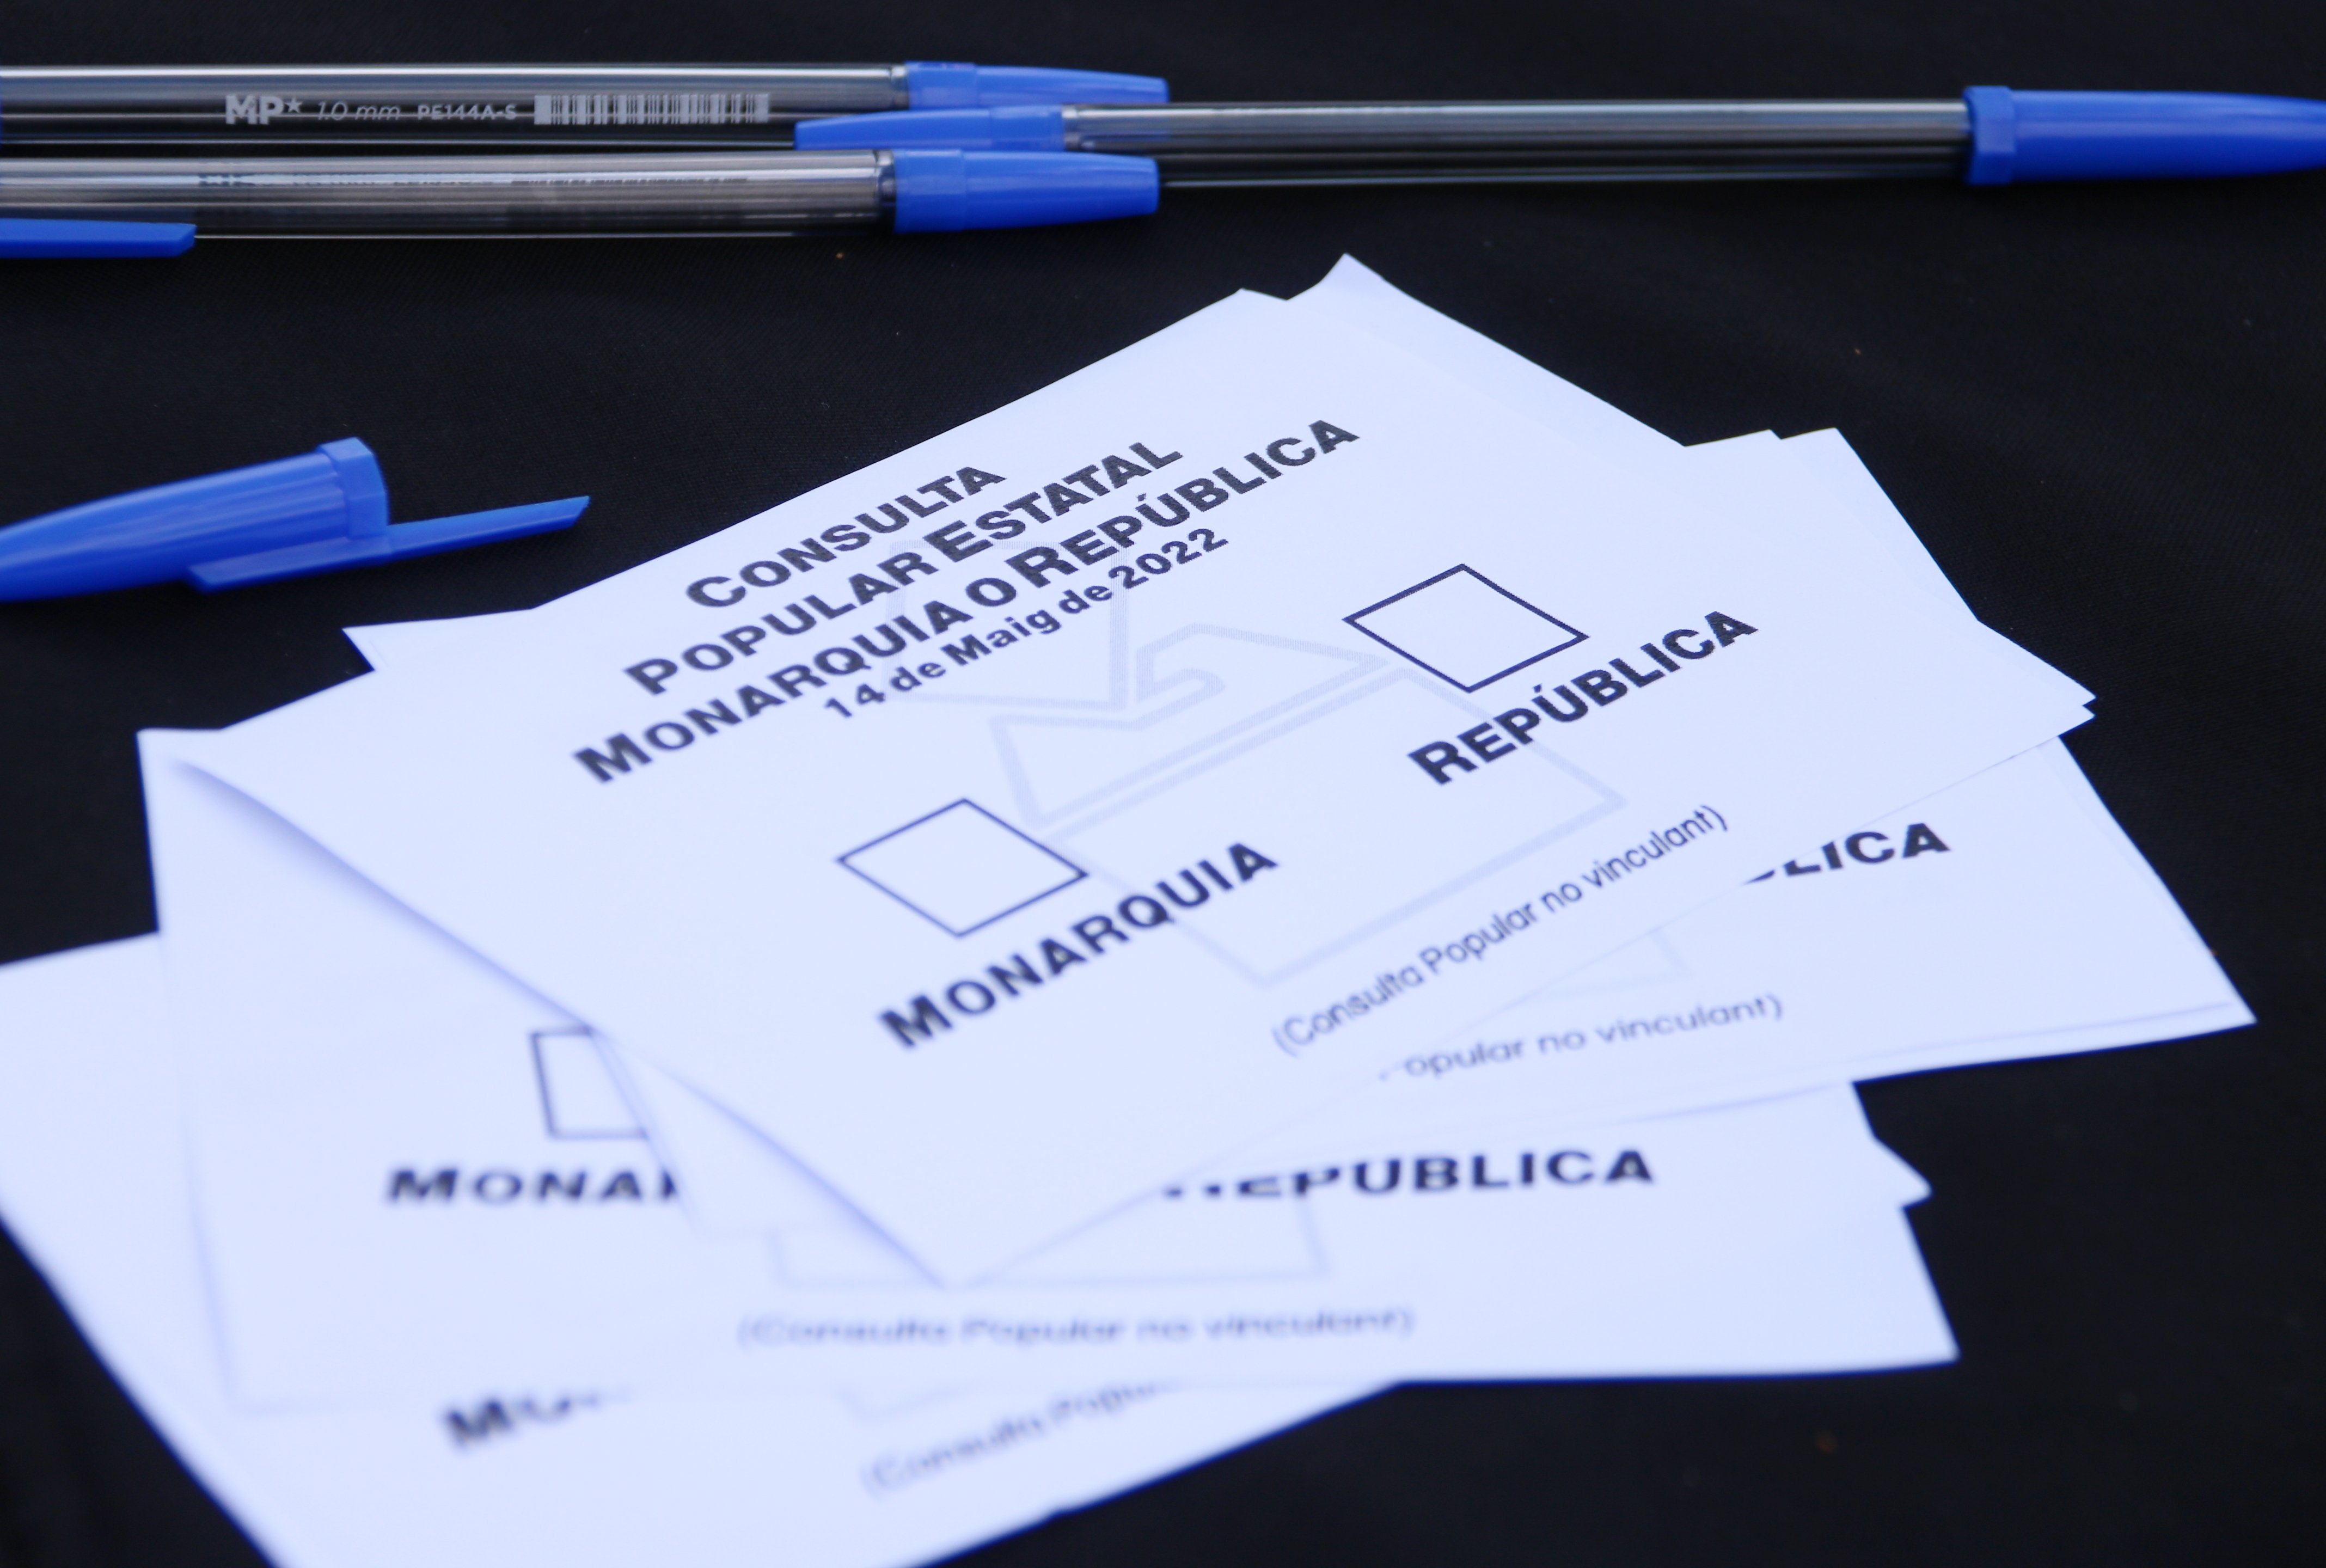 Una cuarentena de ciudades catalanas votarán en la consulta popular sobre la monarquía